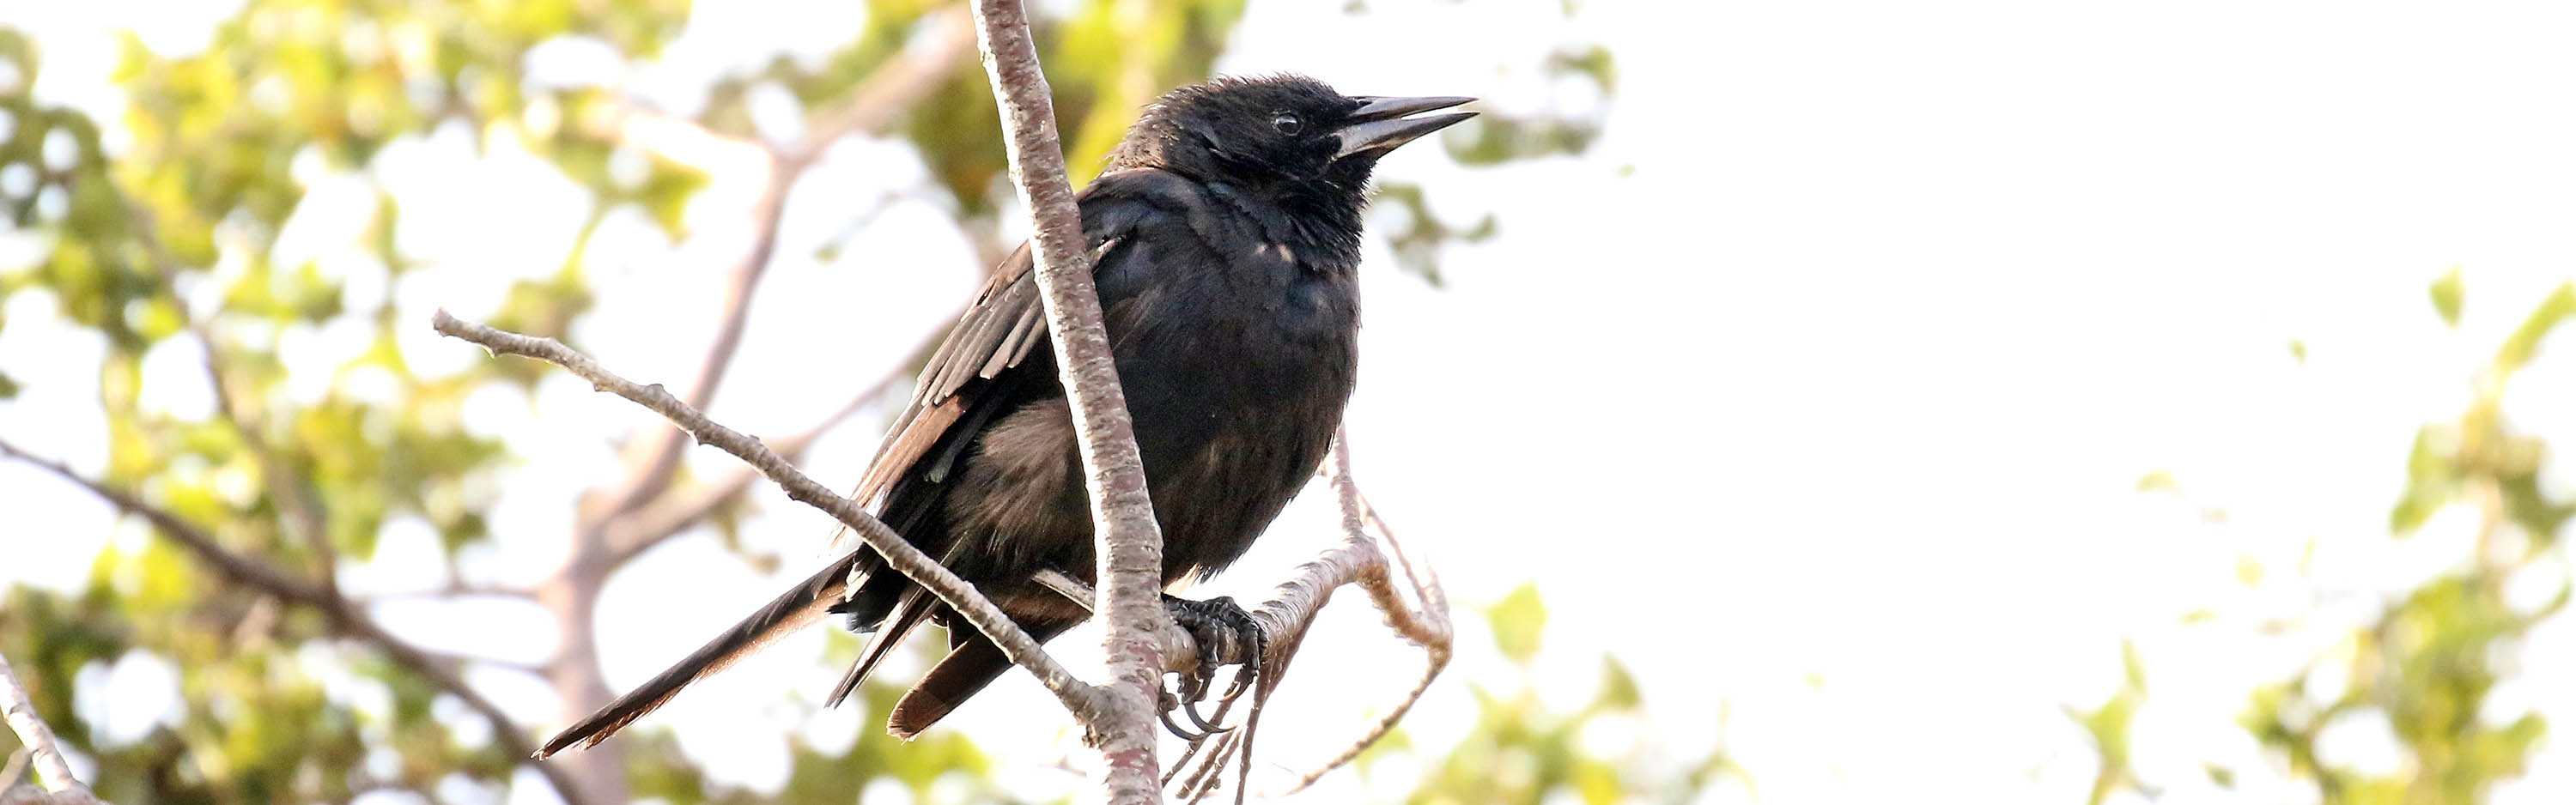 blackbird-autral-ushuaia